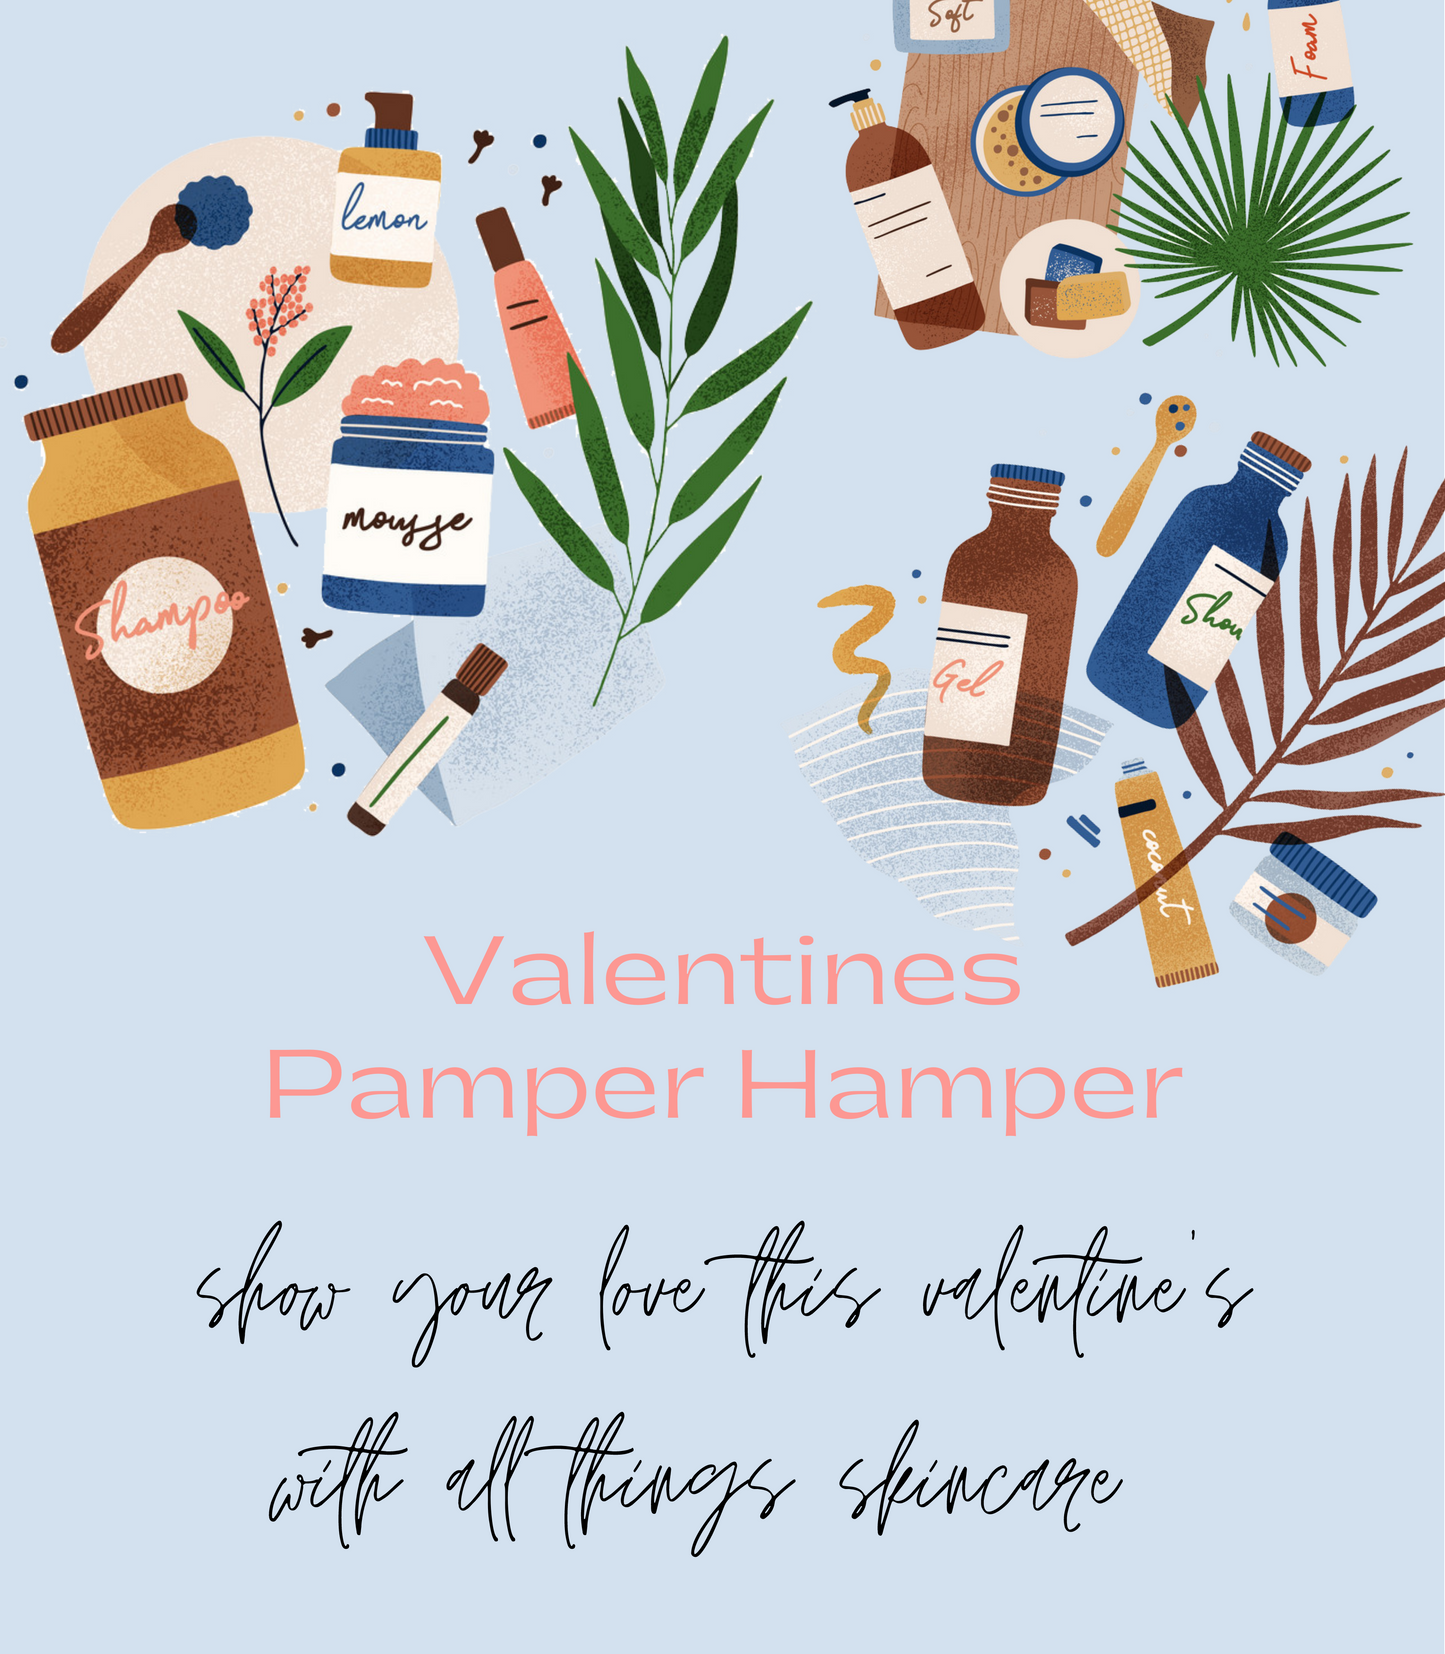 Valentines Day Hamper For the Pamperer